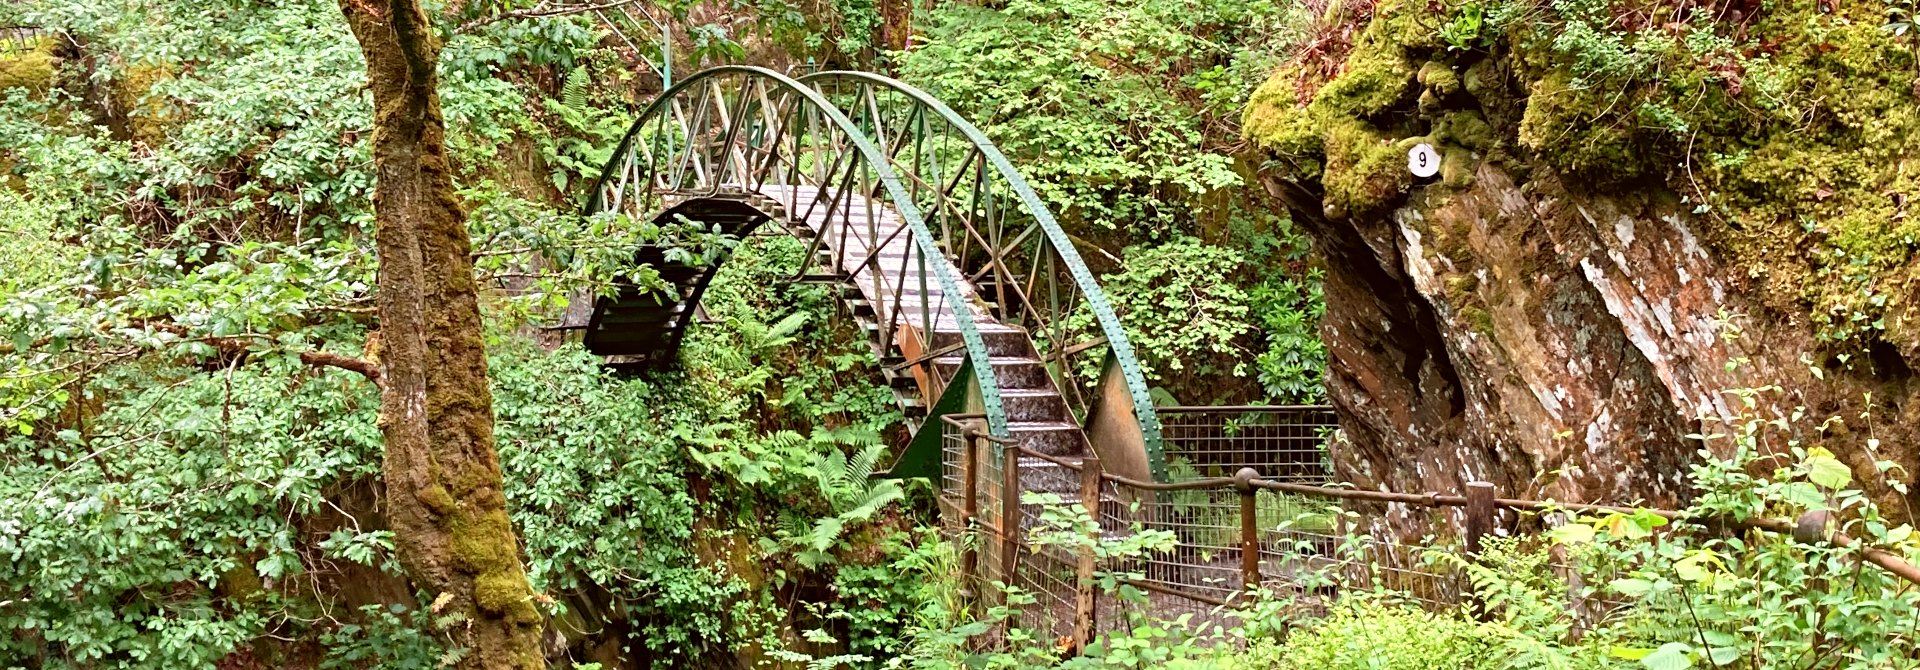 The Walks  Devils Bridge Falls